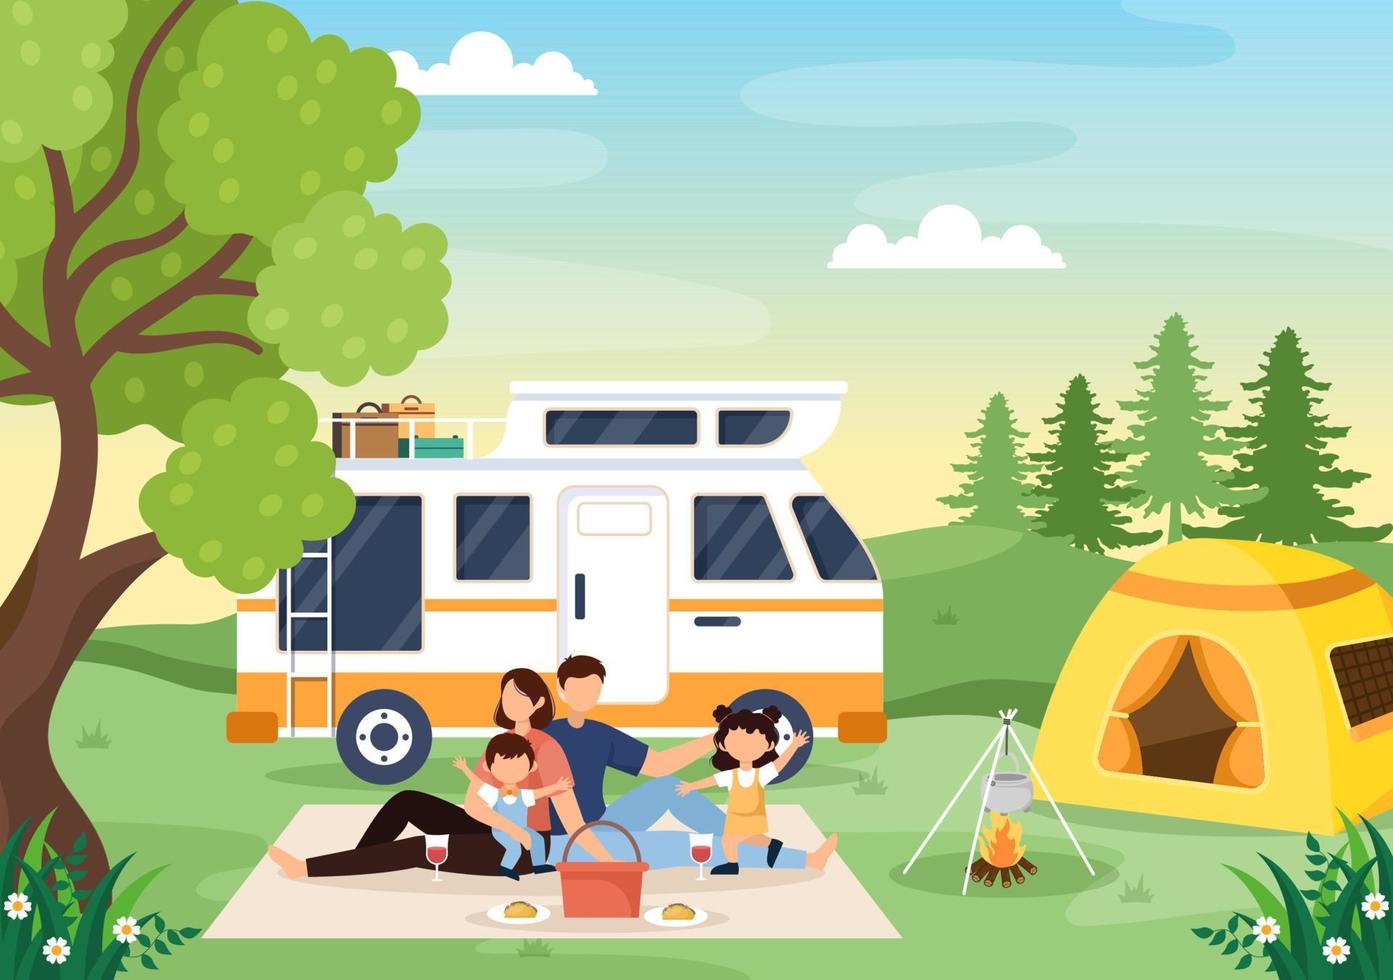 kampeerauto achtergrondillustratie met tent, kampvuur, brandhout, camperauto en zijn uitrusting voor mensen op avontuurlijke tochten of vakanties in het bos of de bergen vector